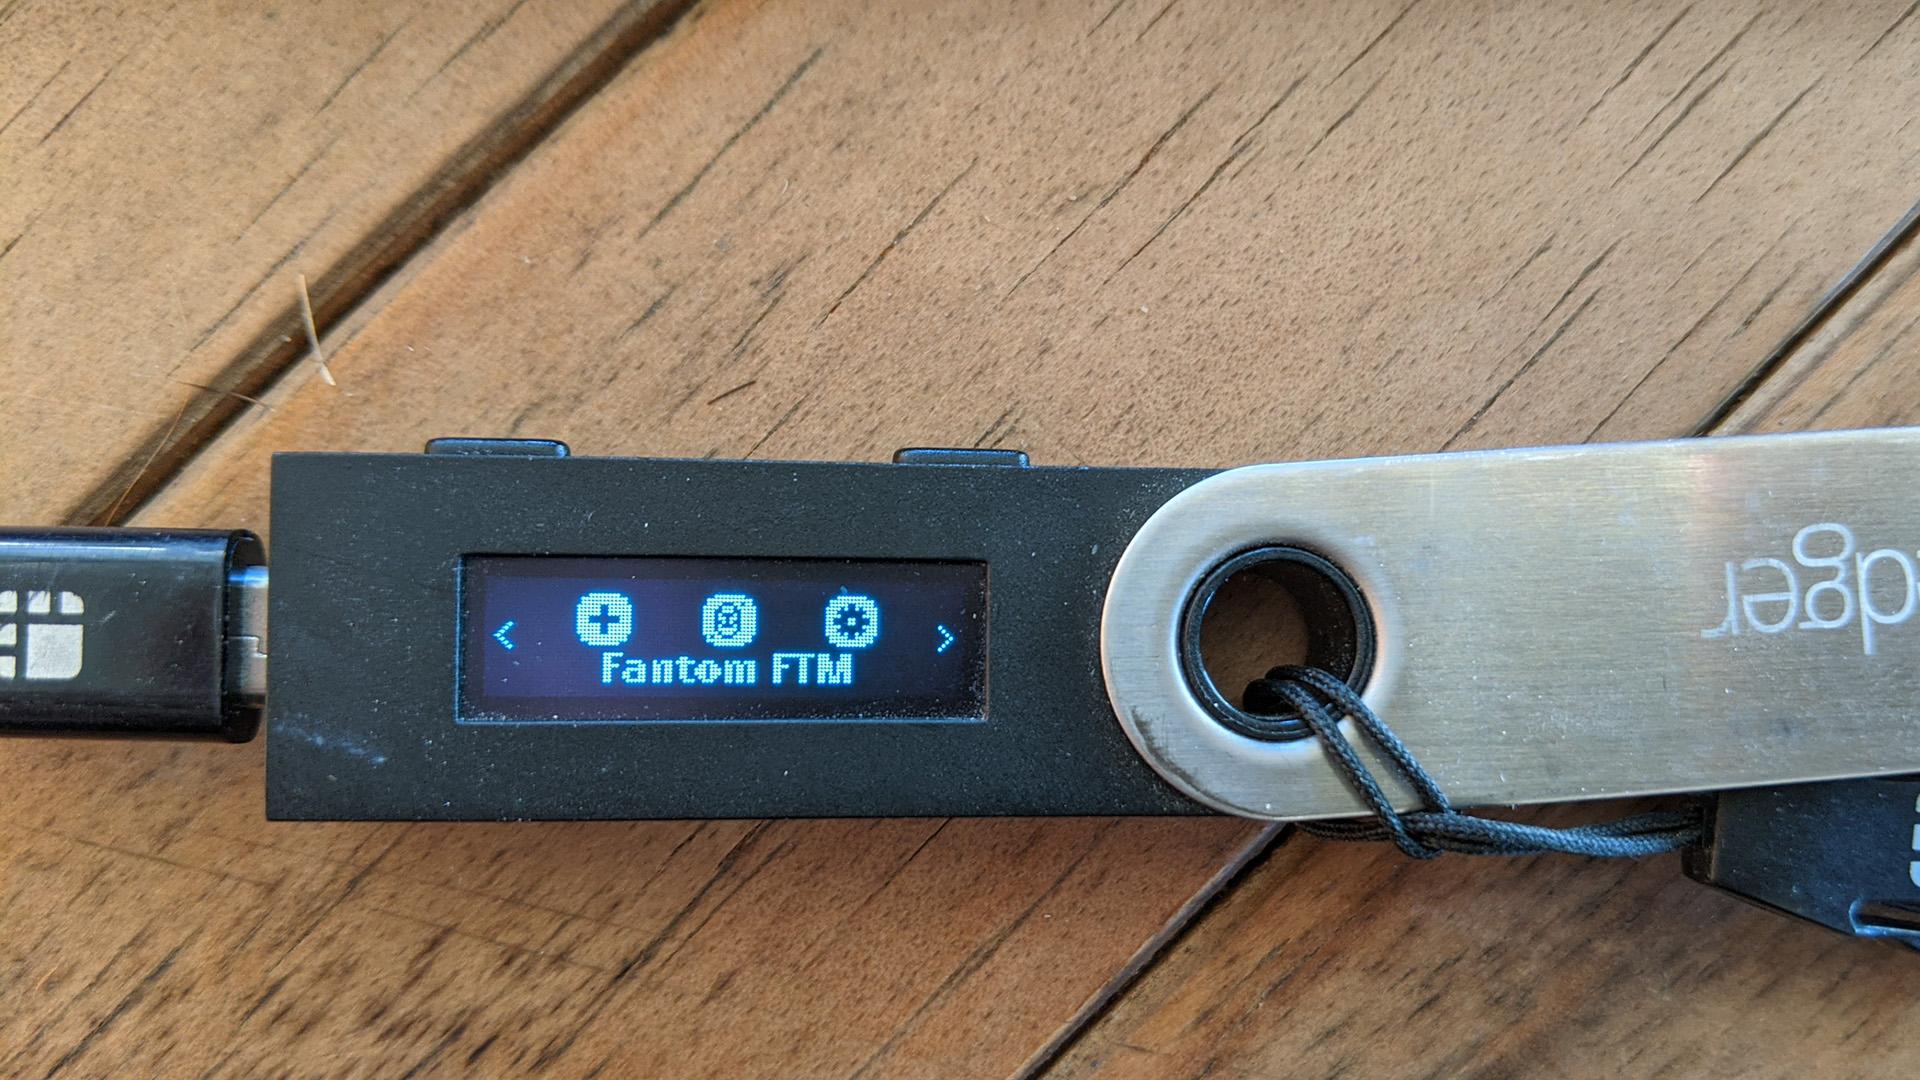 Fantom app on Ledger Nano